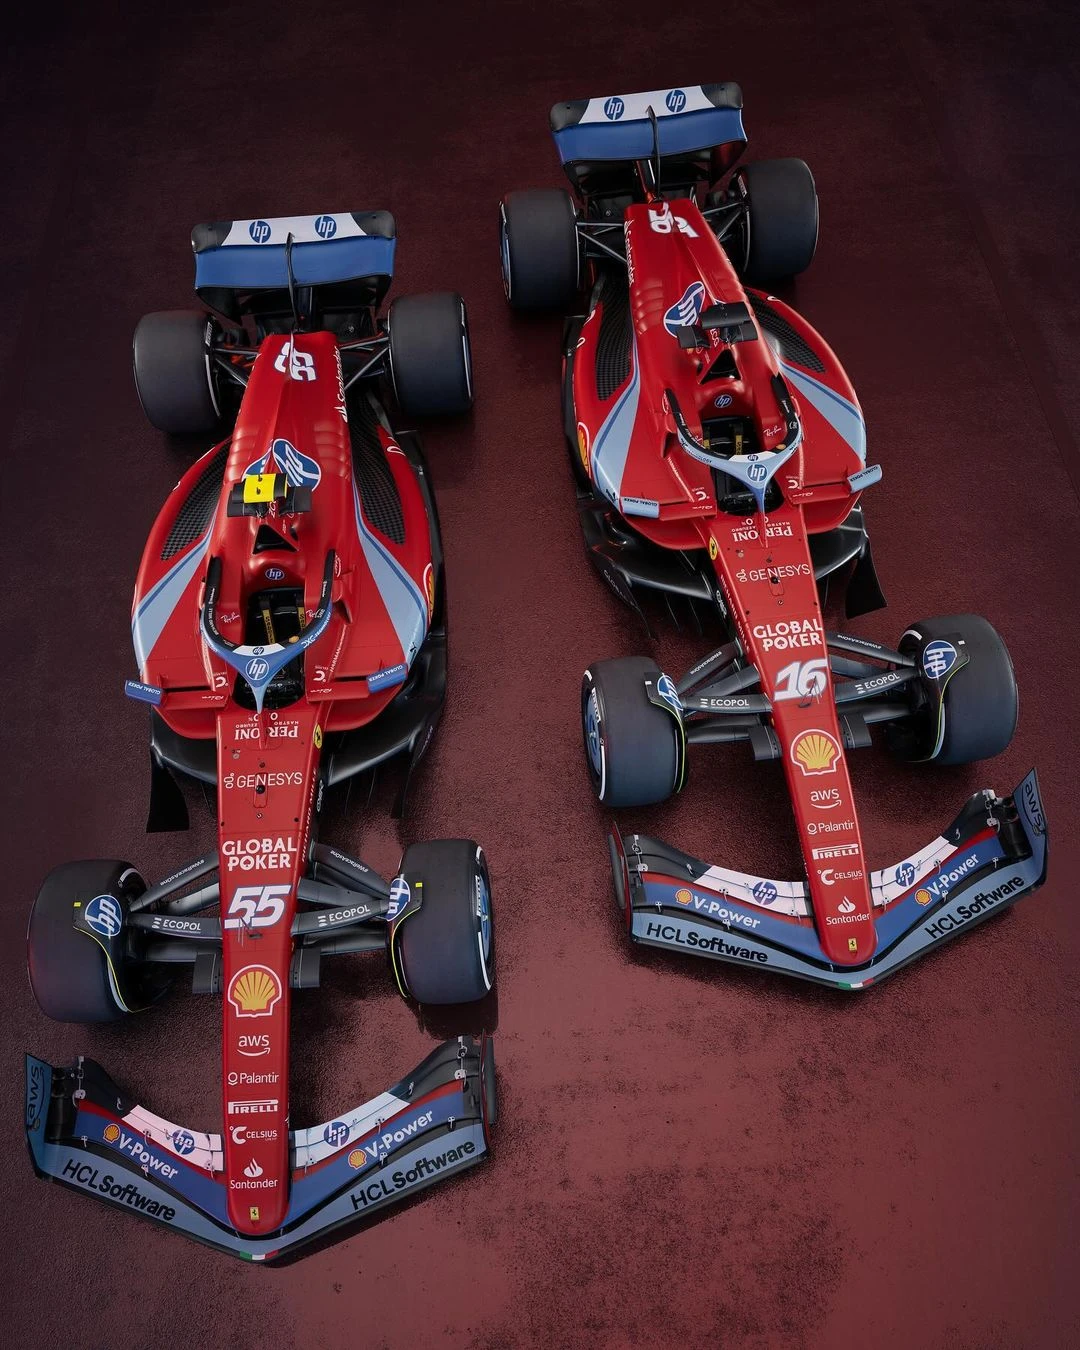 Ferrari'nin Miami GP'sinde kullanacağı özel renk düzeni gallery image 2